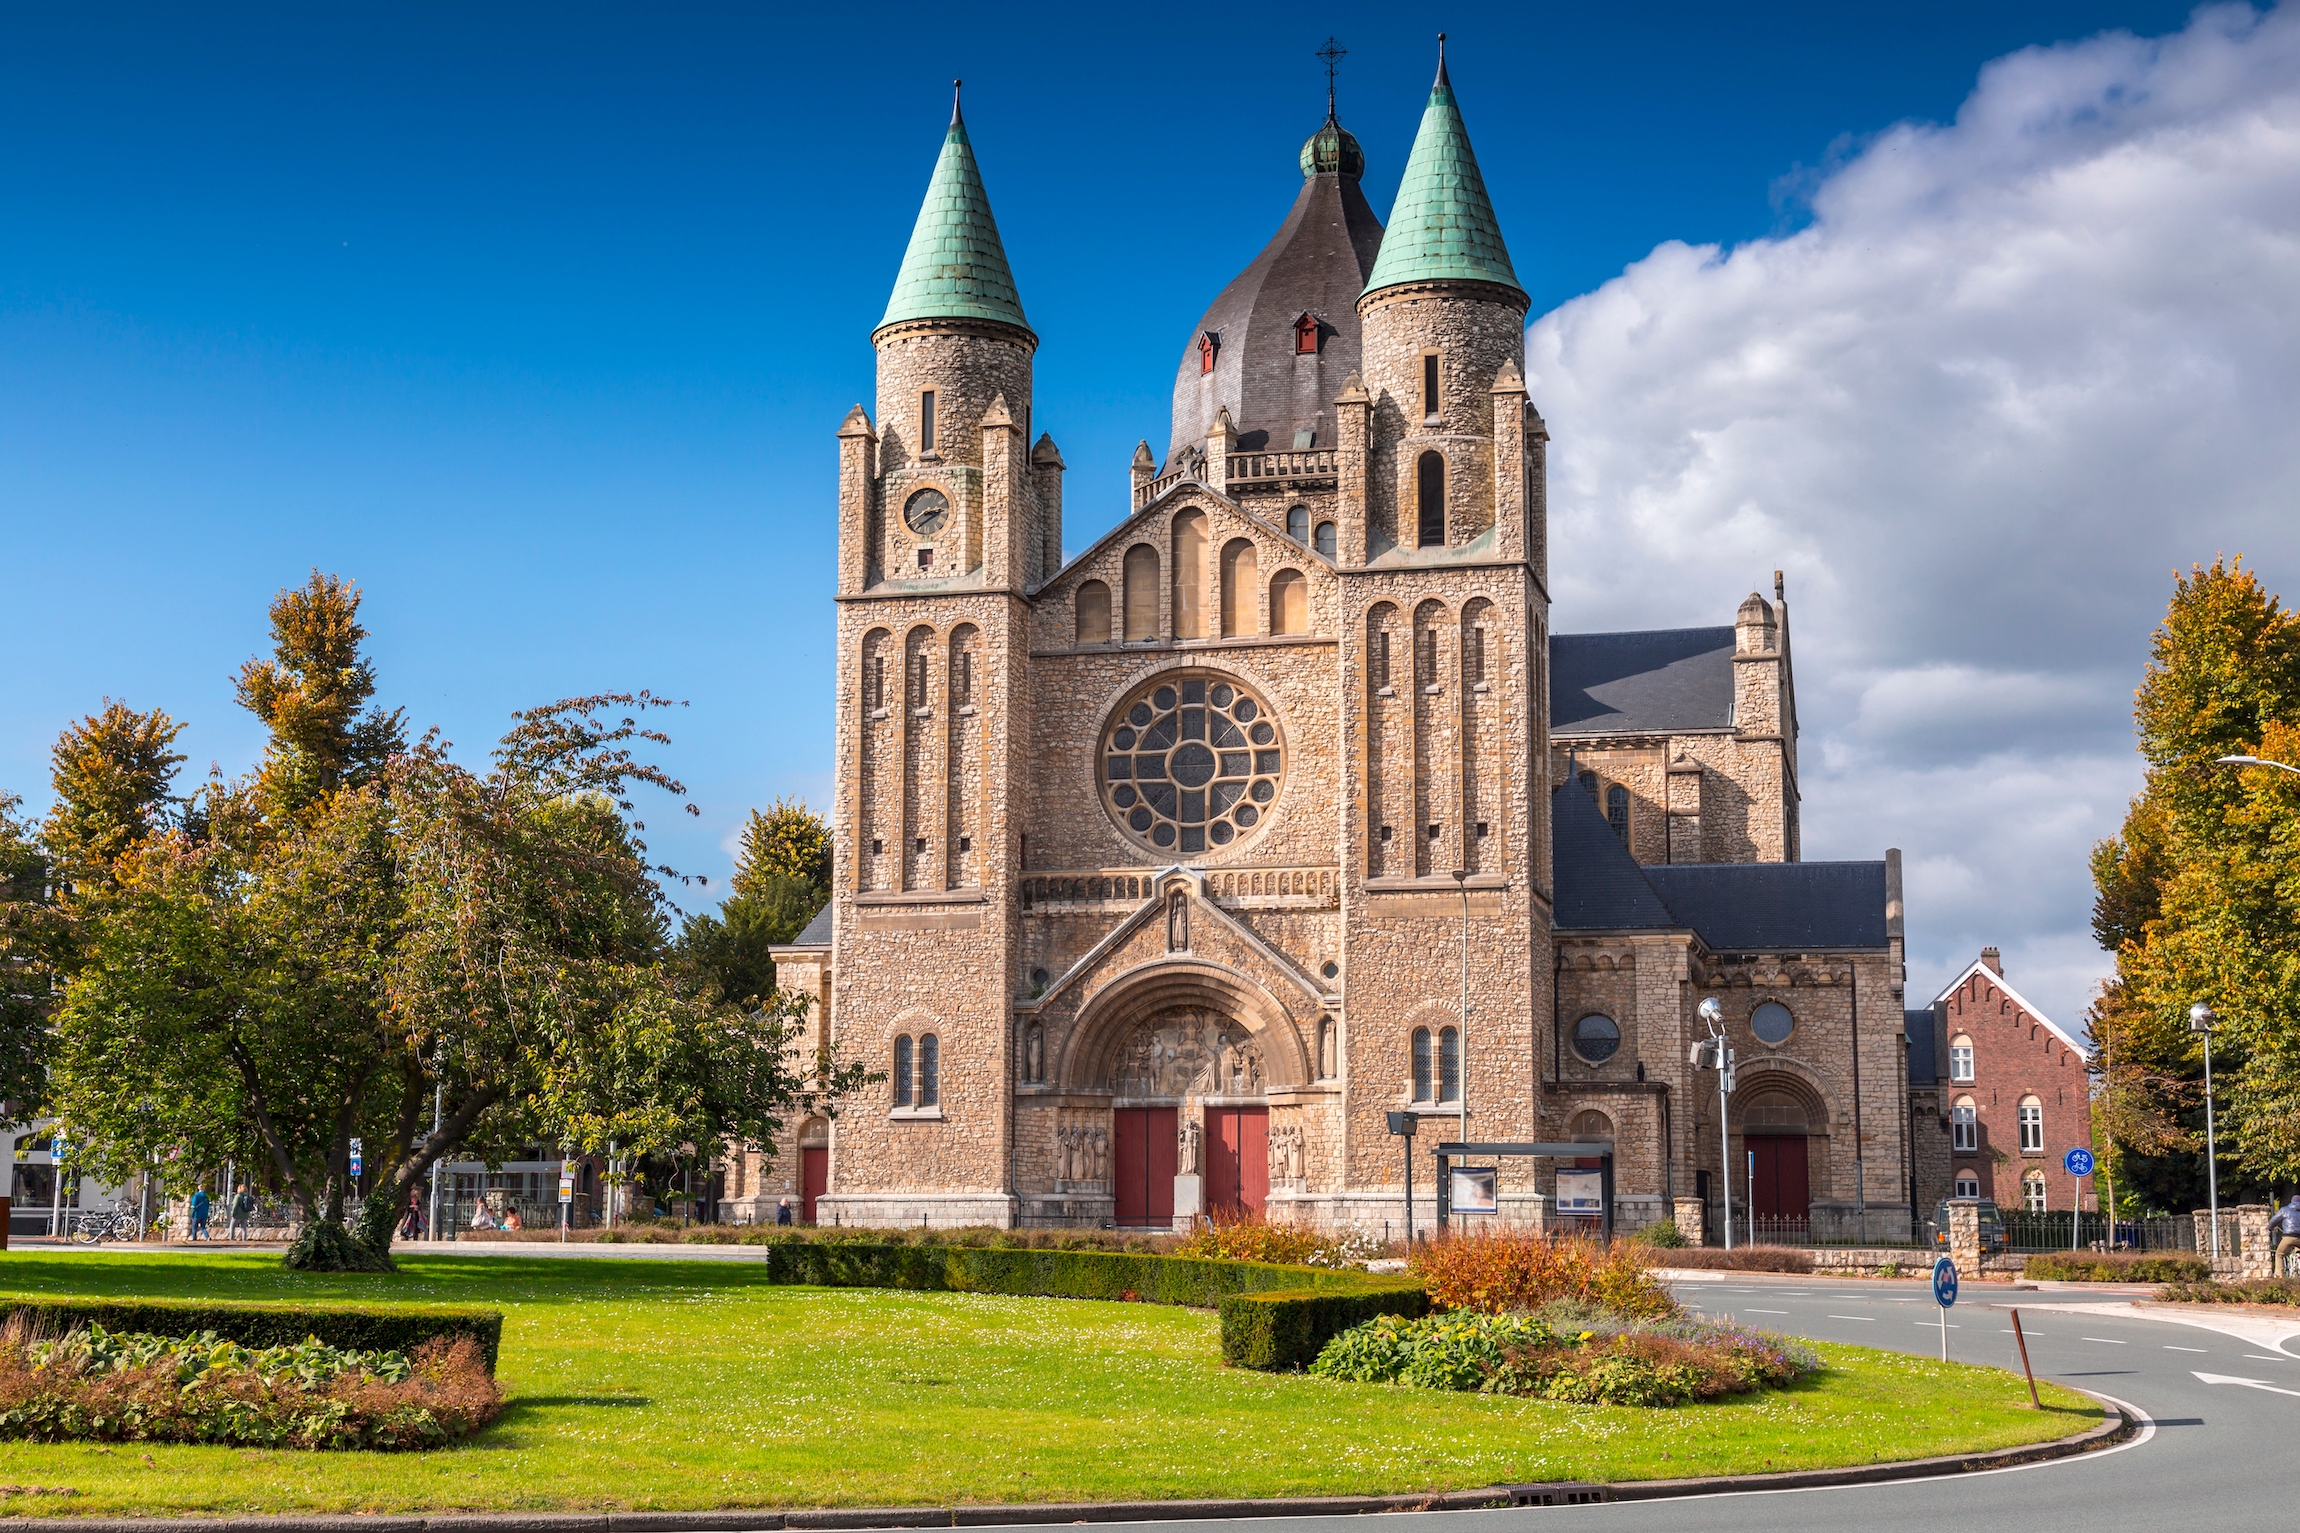 Kościół św. Lamberta lub Sint-Lambertuskerk w Maastricht w Holandii. Kościół został zbudowany w 1916 roku według projektu Huberta van Groenendaela.